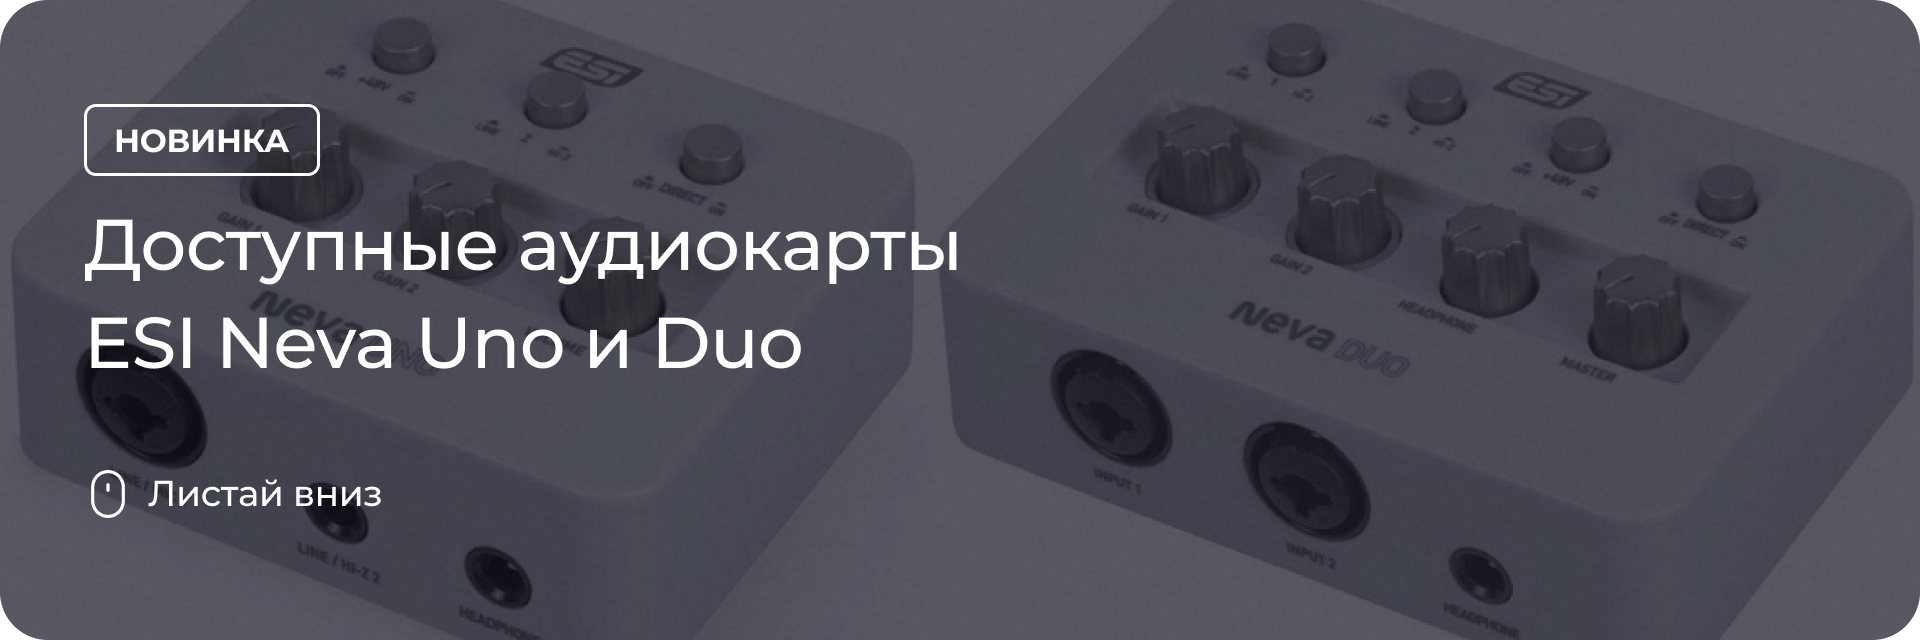 Доступные аудиокарты ESI Neva Uno и Duo